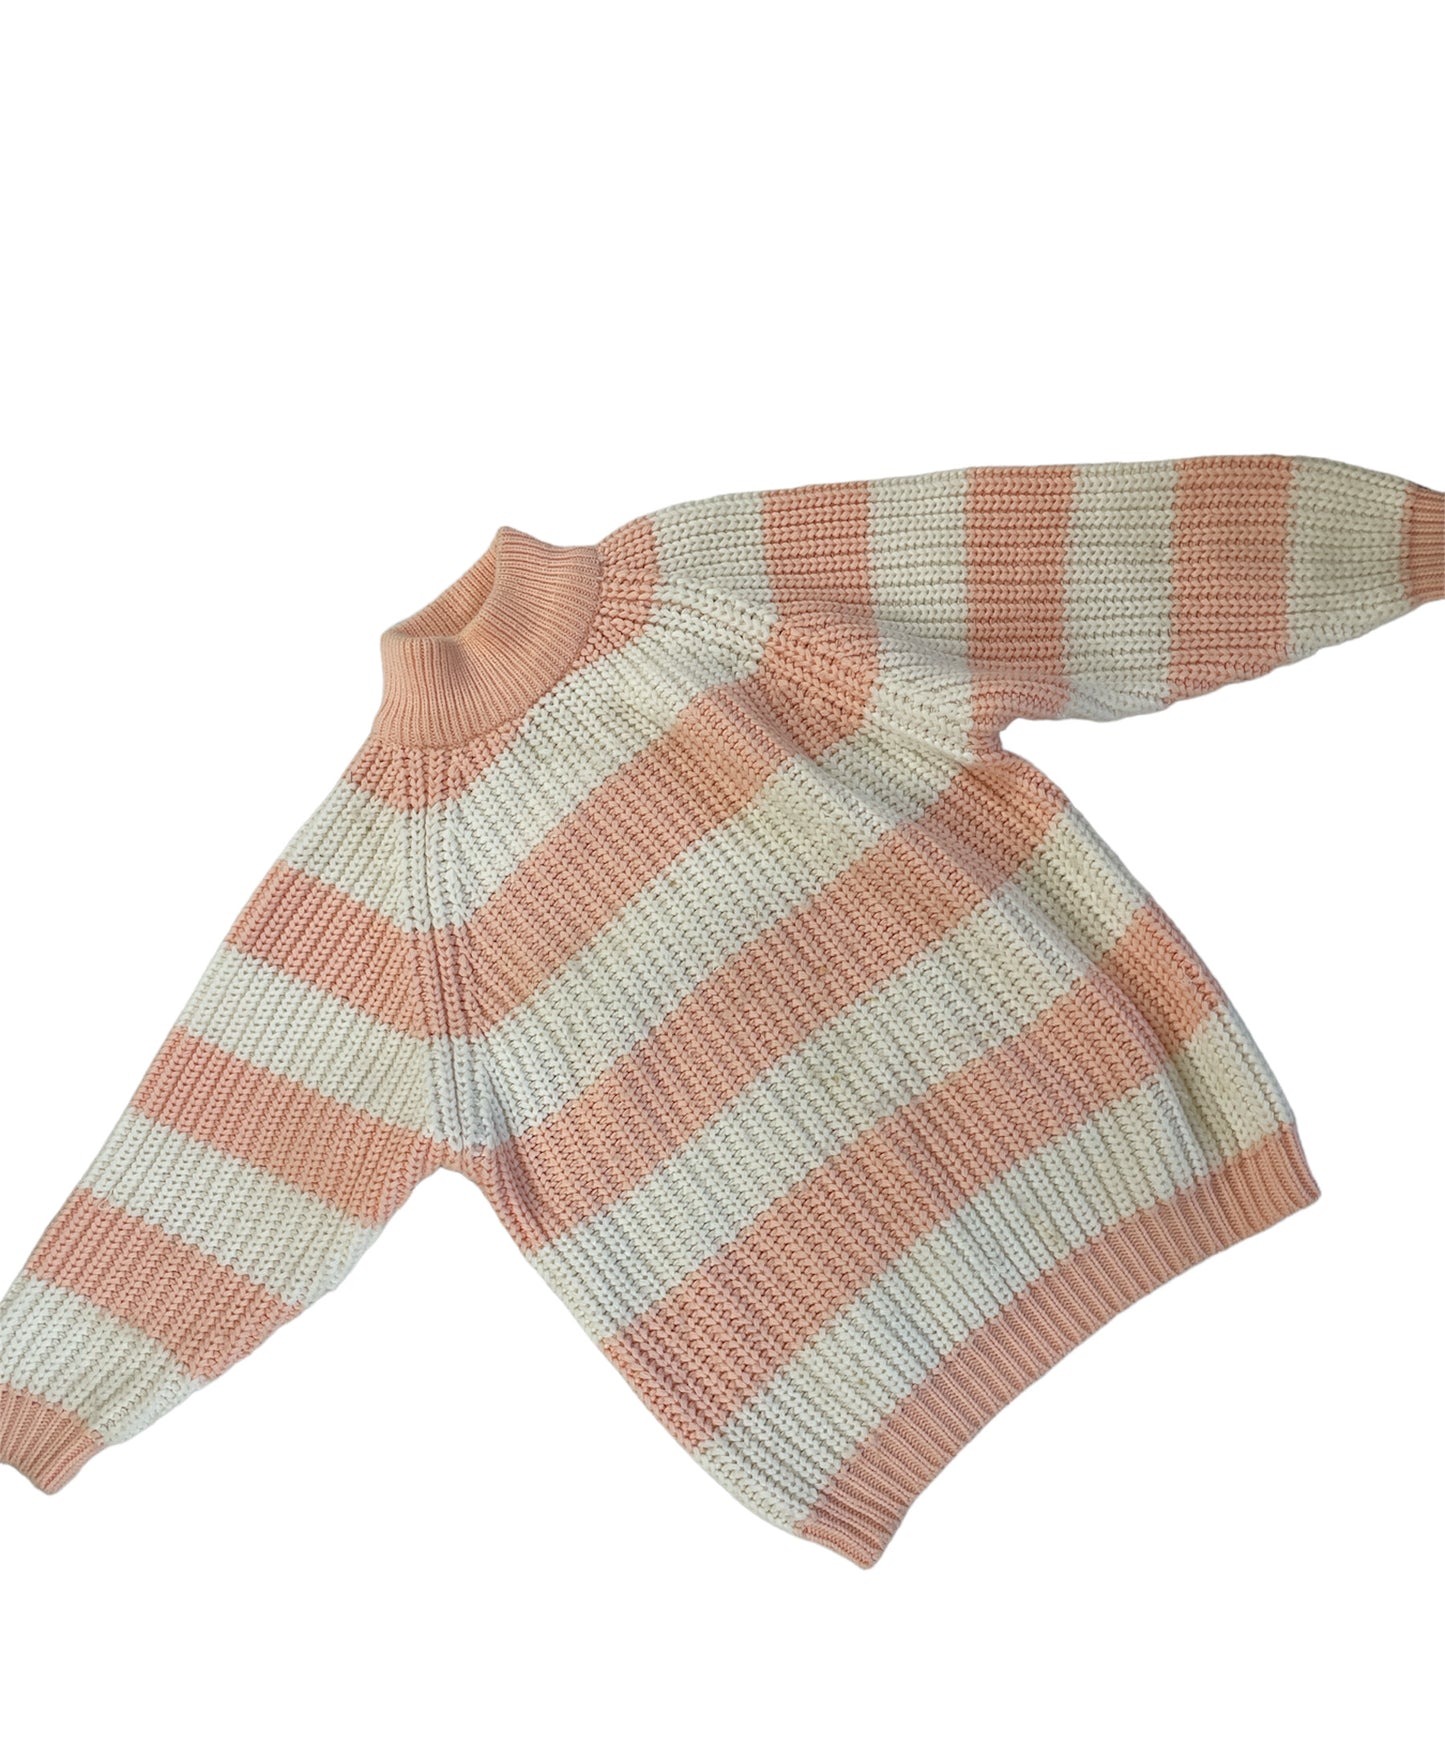 Chunky striped mock neck knit sweater